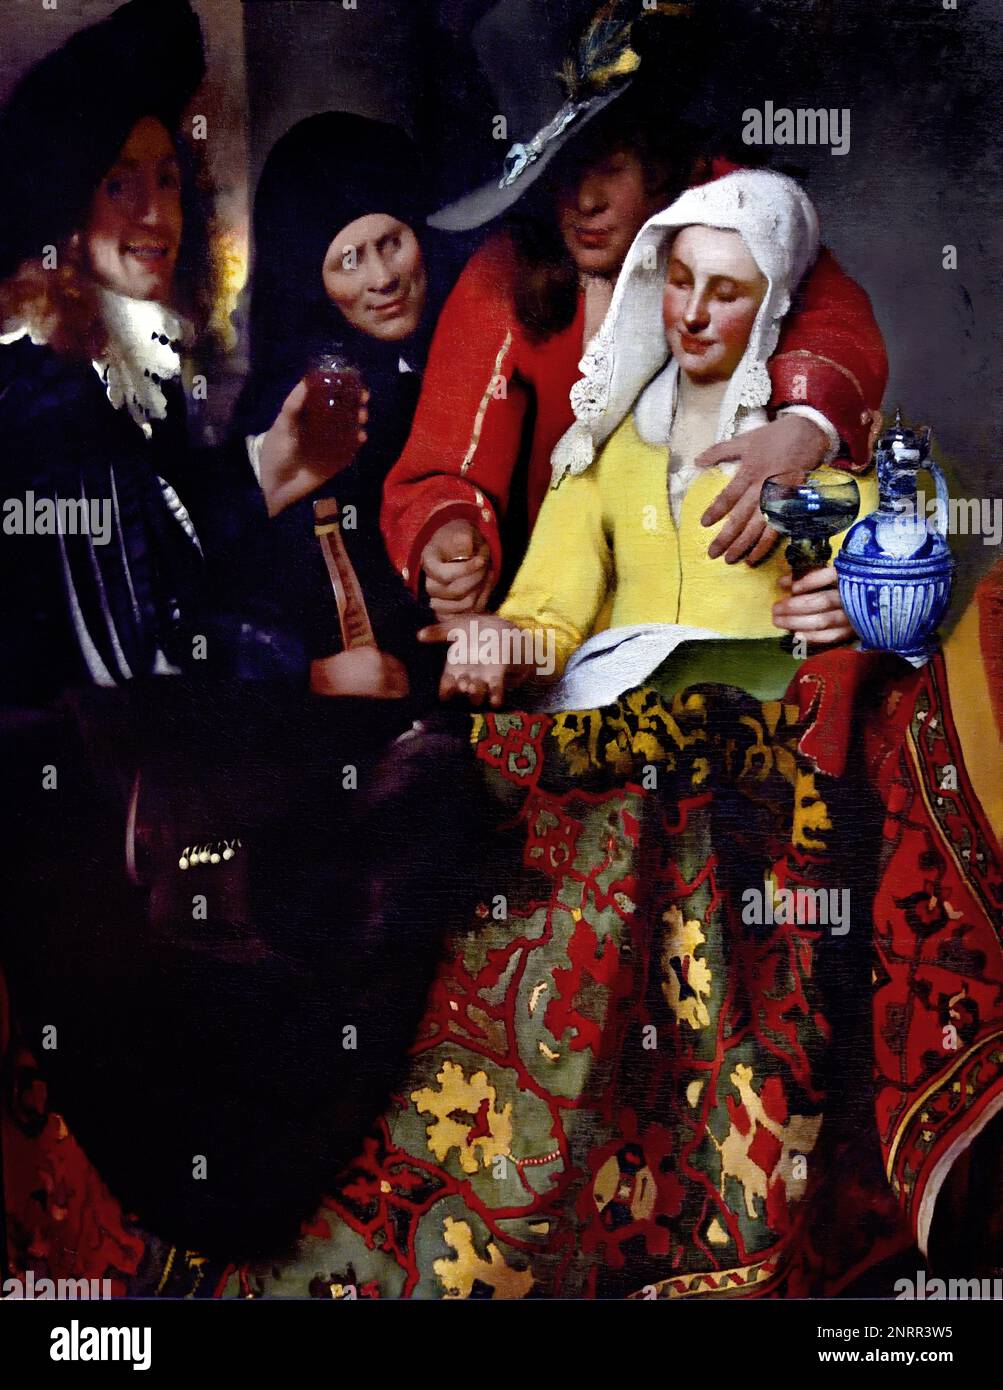 La Procuress 1656 di Johannes Vermeer o Jan Vermeer 1632 - 1675, Delft, Paesi Bassi, Olanda, ( Pittore olandese nell'Età dell'Oro, uno dei più grandi pittori, 17th ° secolo. senza tempo, momenti assennati, rimane enigmatica, inimitabile combinazione di colori e contenuto luminoso sconcertante) Foto Stock